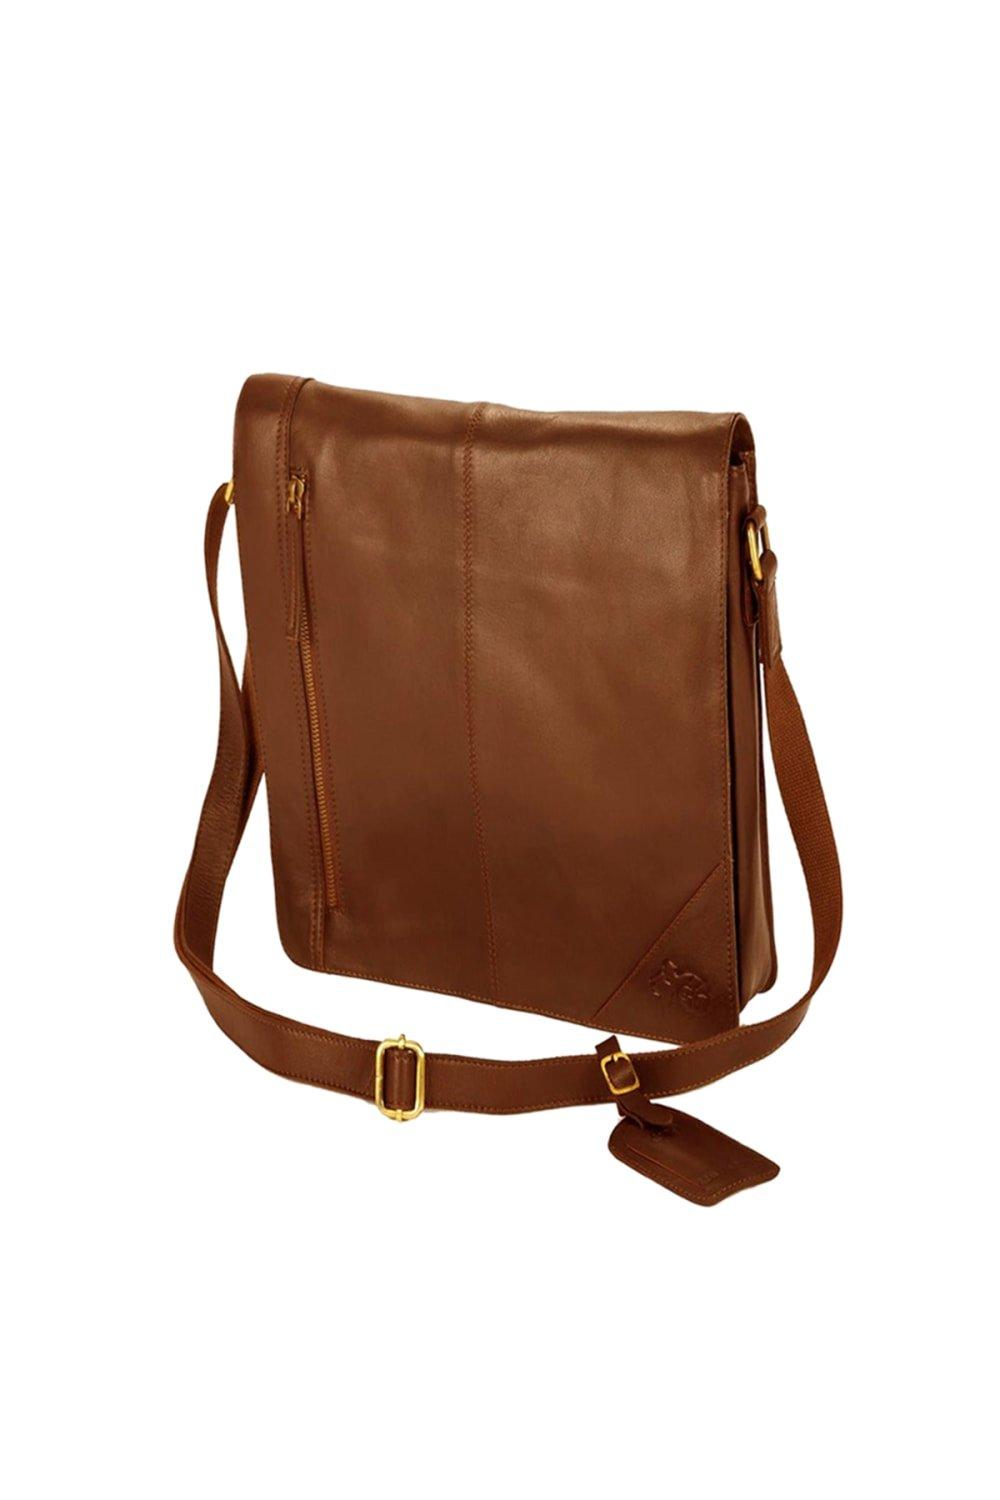 Узкая сумка-мессенджер Eastern Counties Leather, коричневый